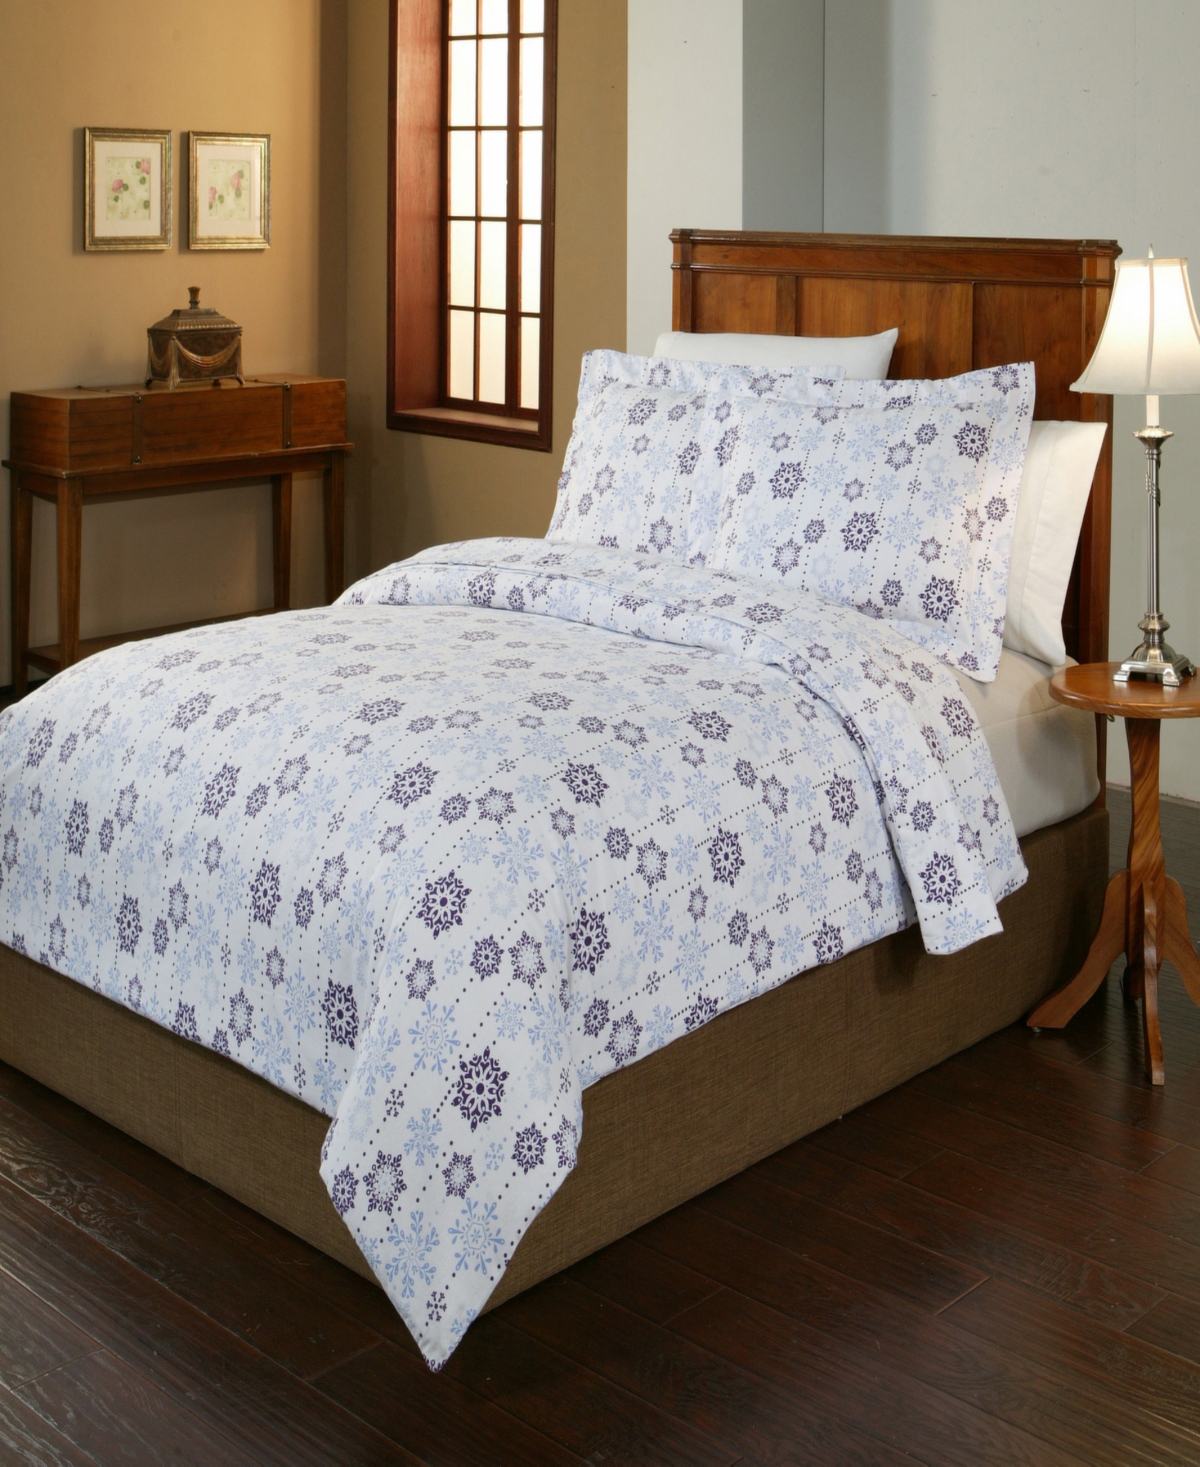 Pointehaven Snowdrop Print Luxury Size Cotton Flannel Duvet Set Twin Twin Xl Bedding In Snow Drop